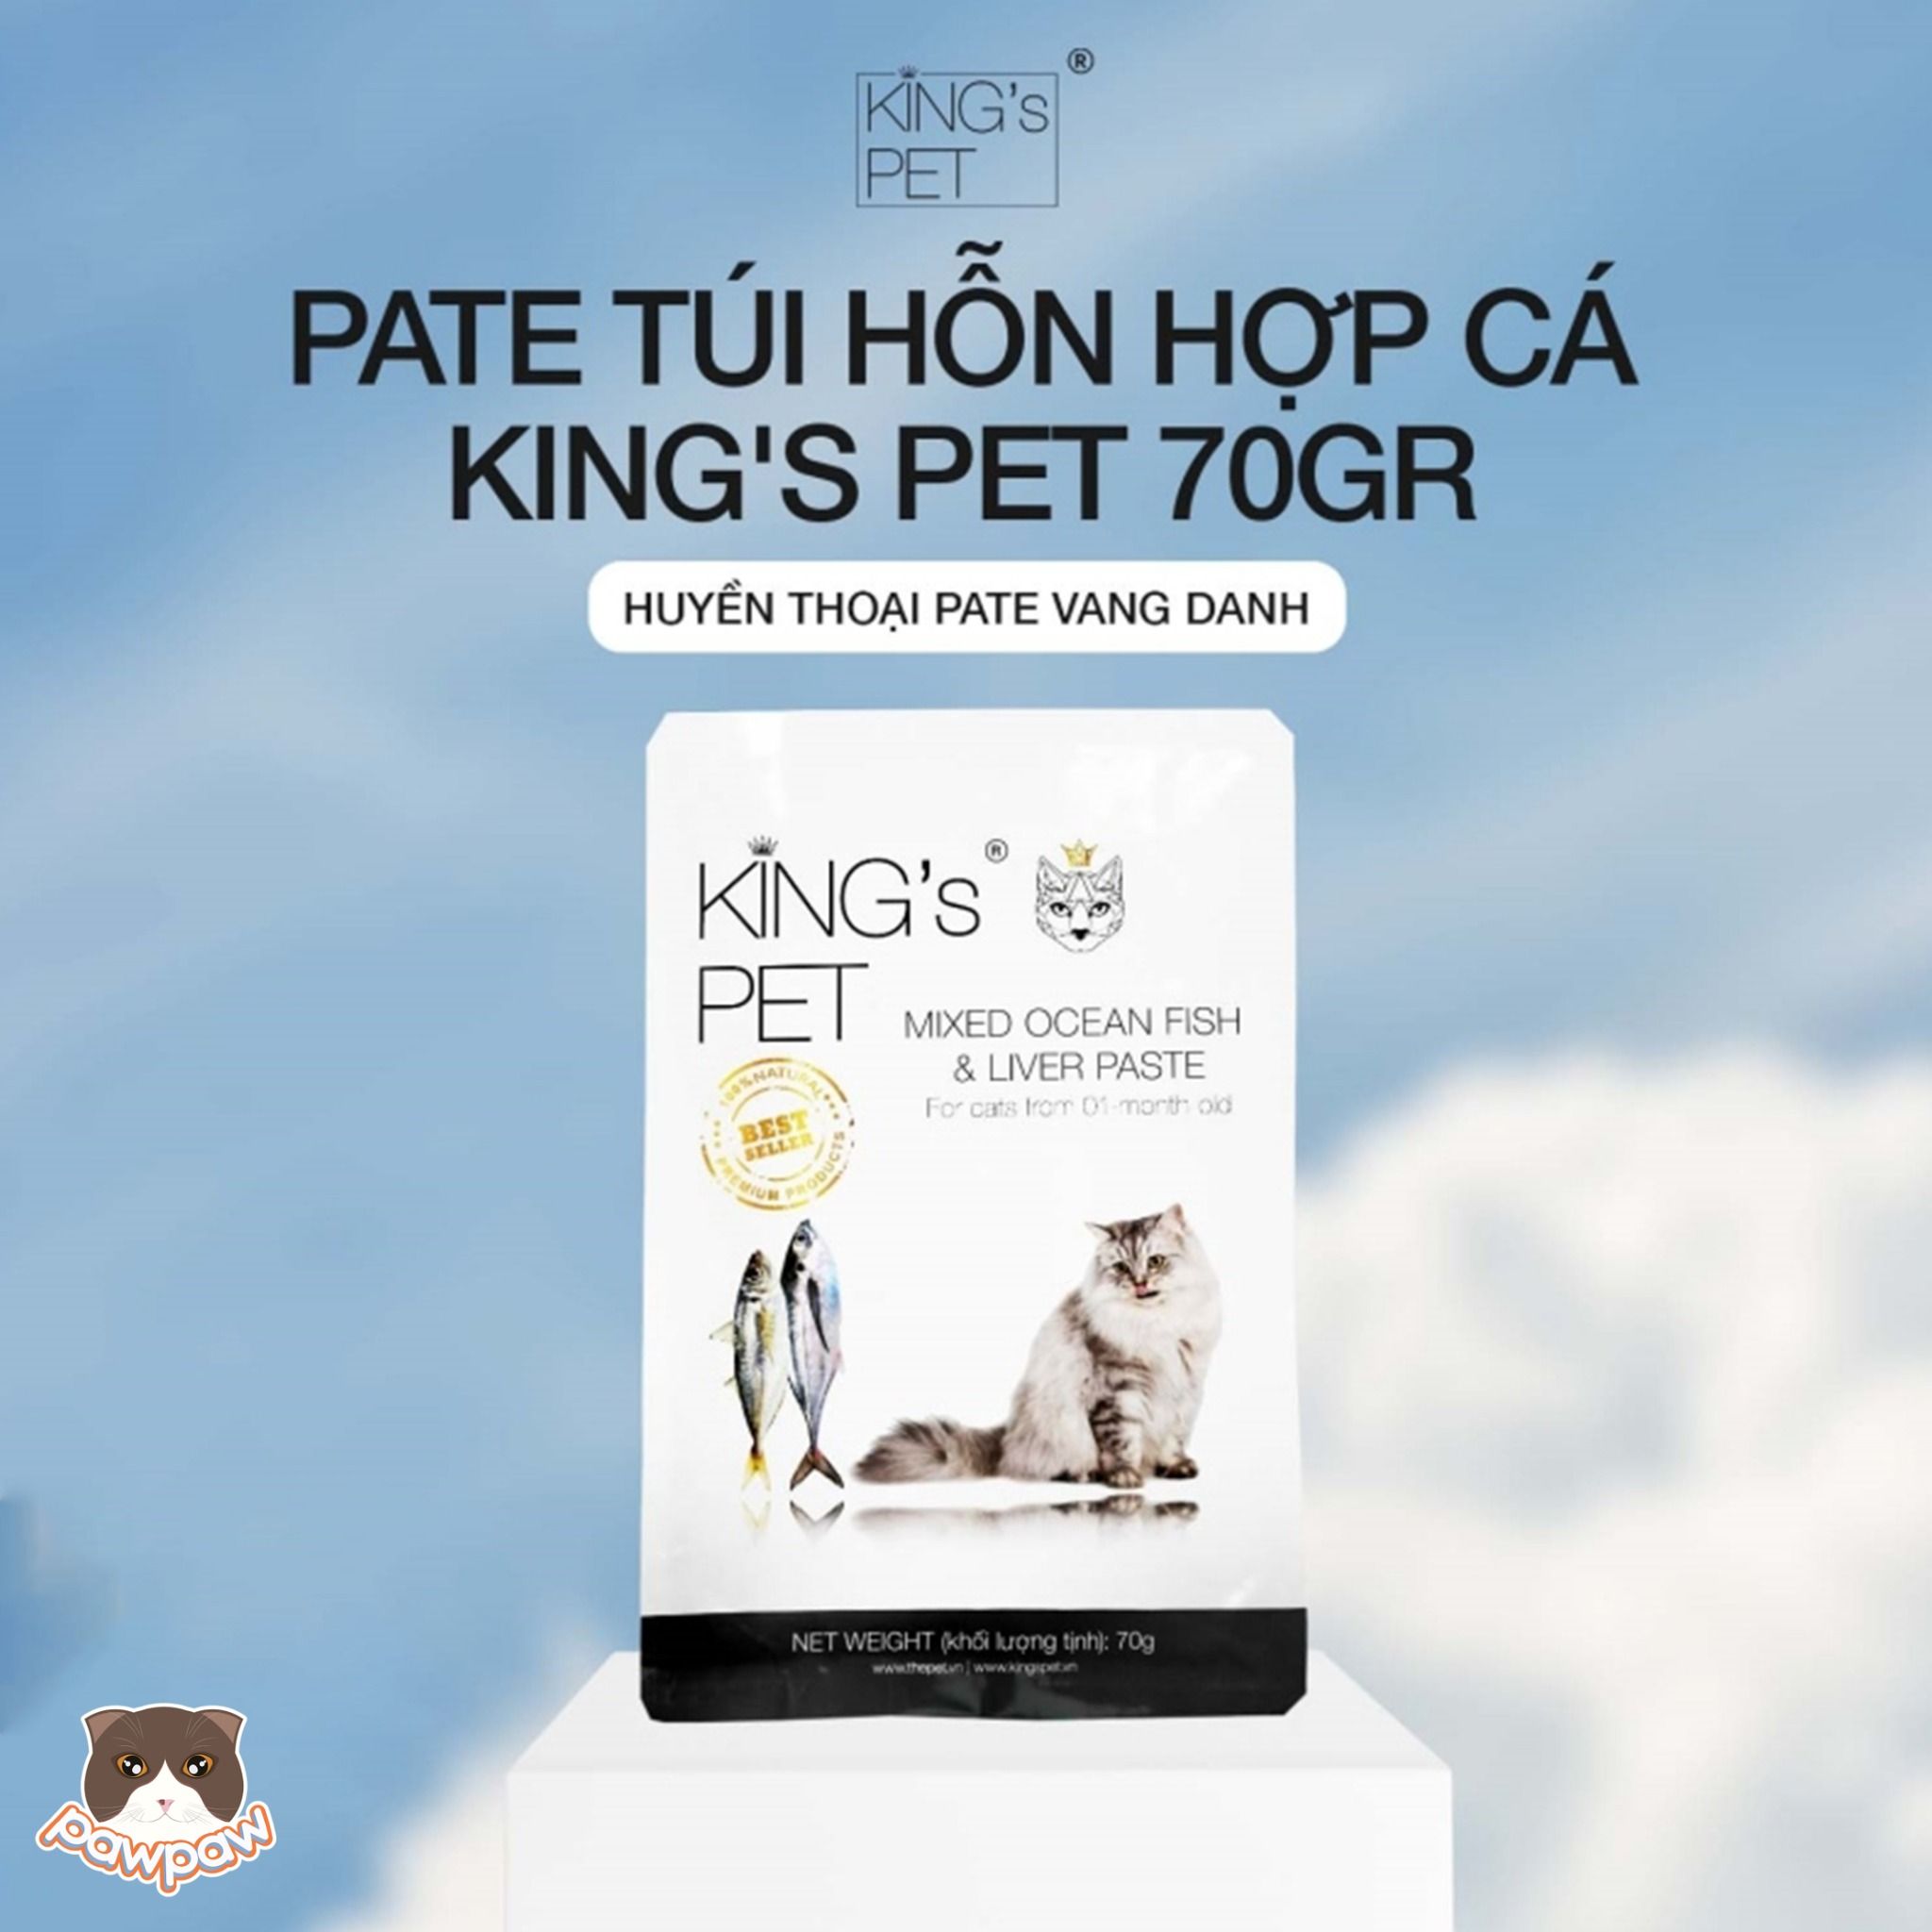  Pate King's Pet gói 70g cho chó mèo 